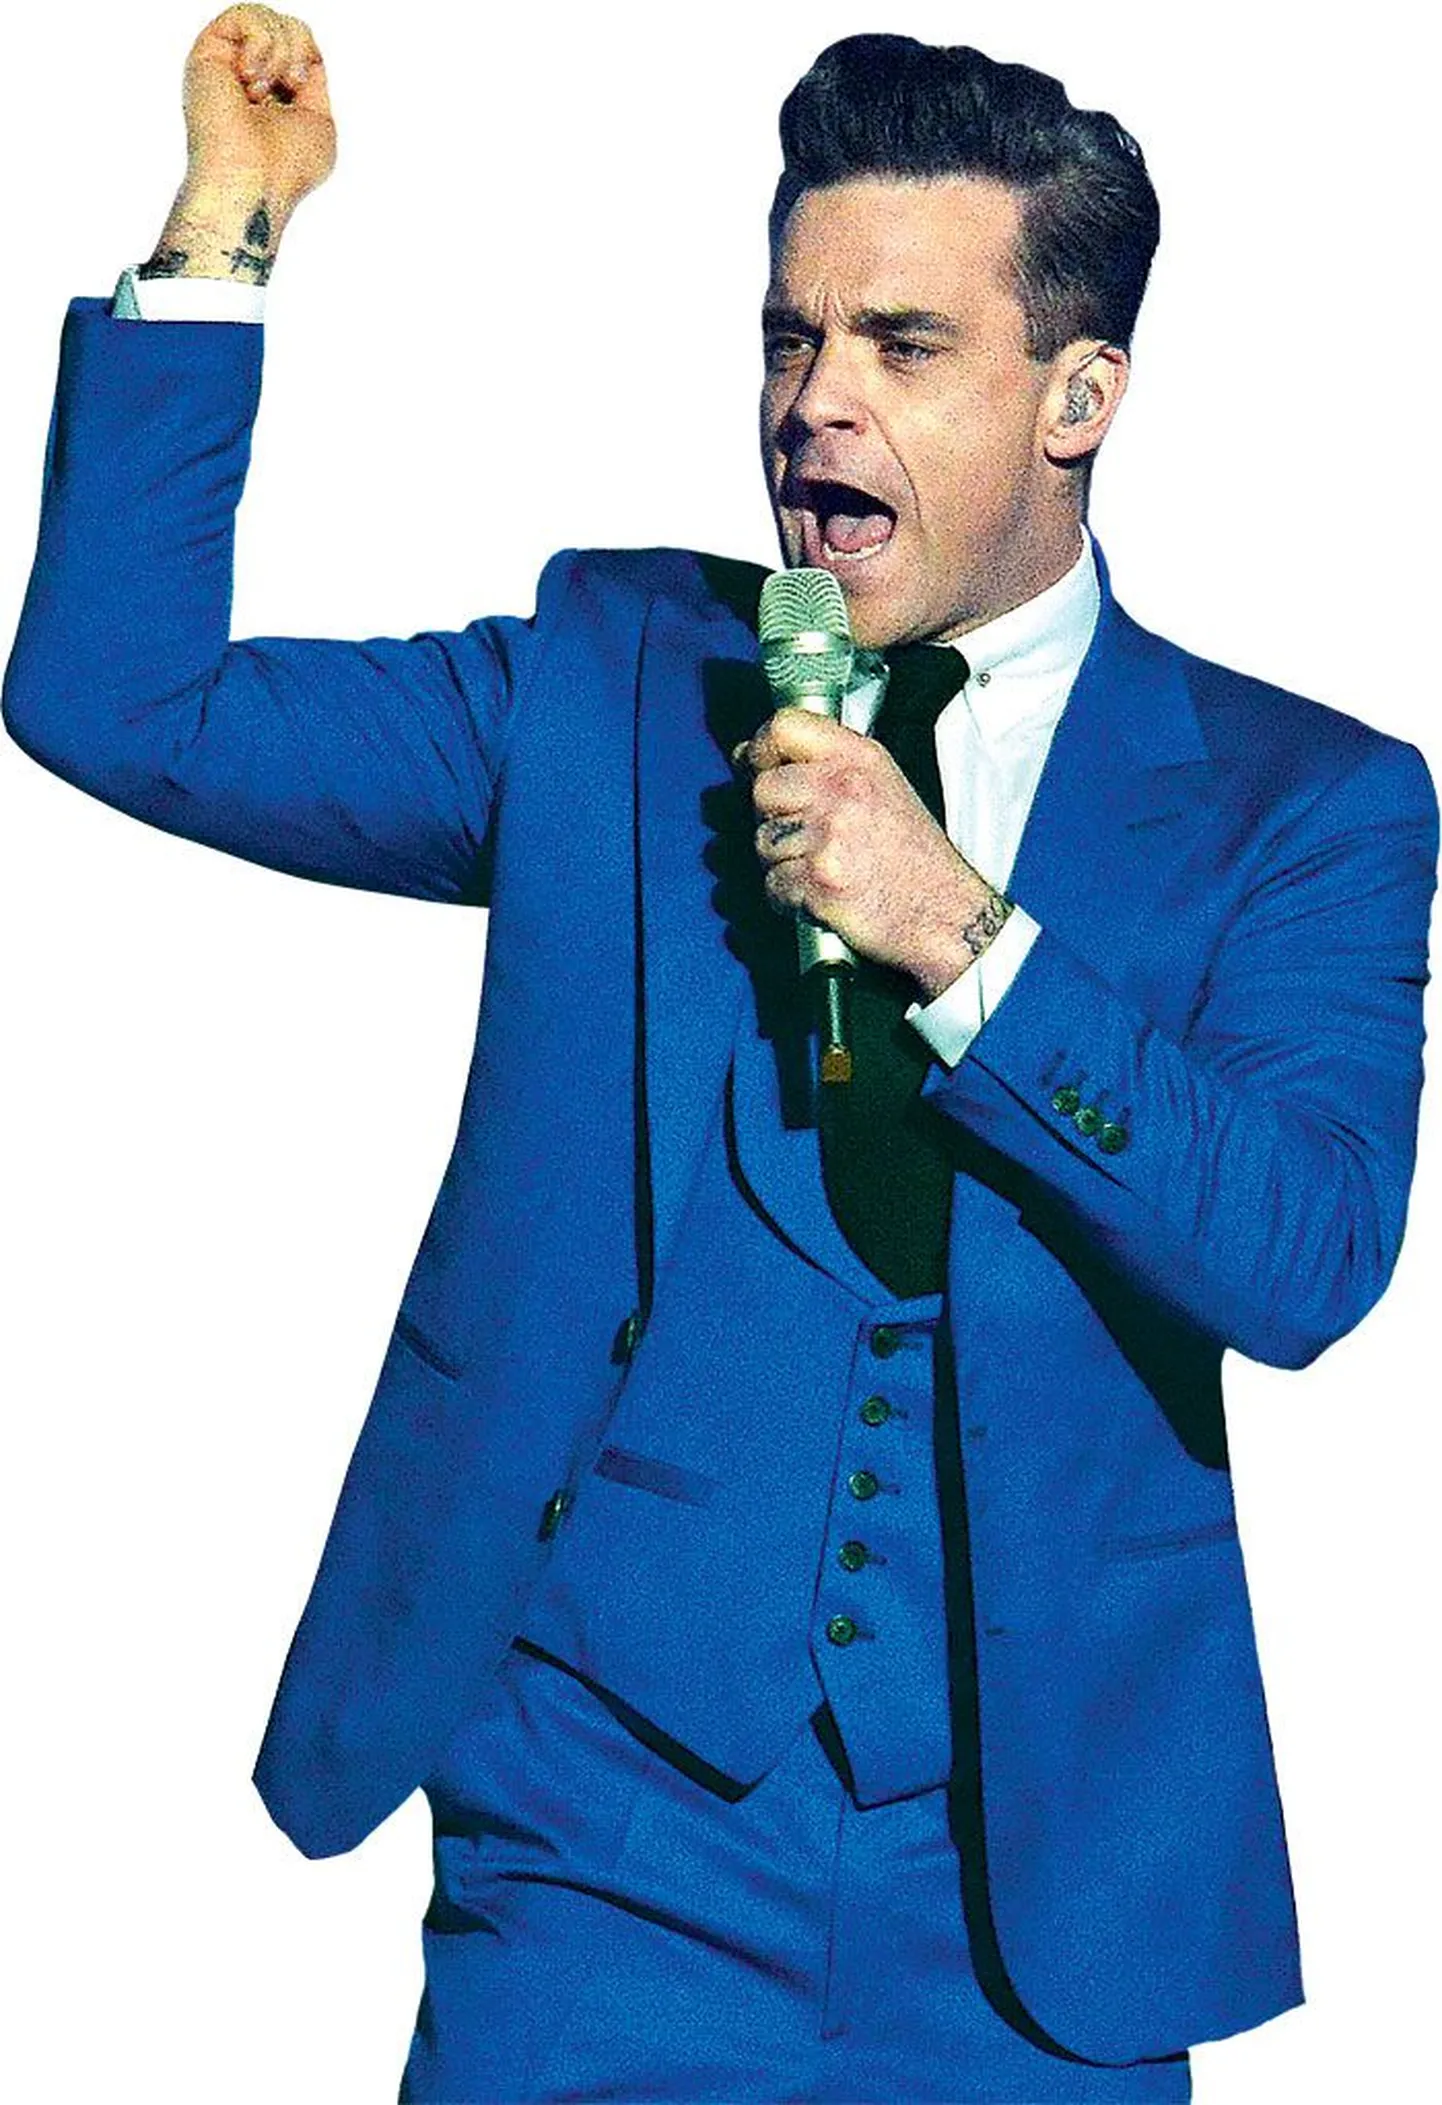 Robbie Williams annab ainsa kontserdi Põhja-Euroopas Eestis 20. augustil Tallinna lauluväljakul.